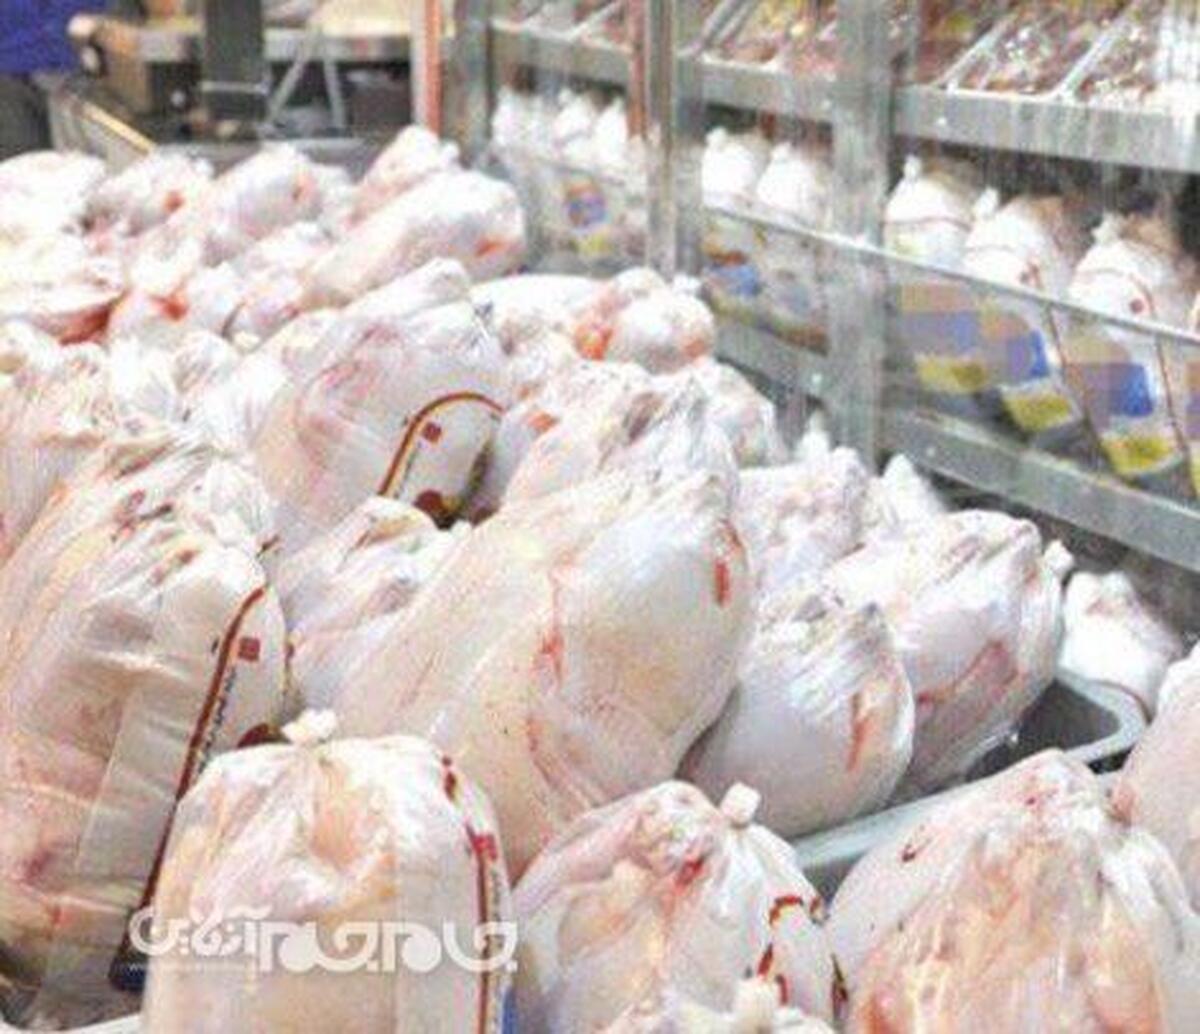 علی اصغر نادران دبیر انجمن کشتارگاه‌های استان گلستان، از جلسه اعضای این انجمن با استاندار گلستان در روزهای آینده درباره وضعیت تولید و قیمت مرغ، در استان خبر داد و گفت: این نشست به دلیل اینکه استاندار در سفر کاری بود به روزهای آینده موکول شده است.